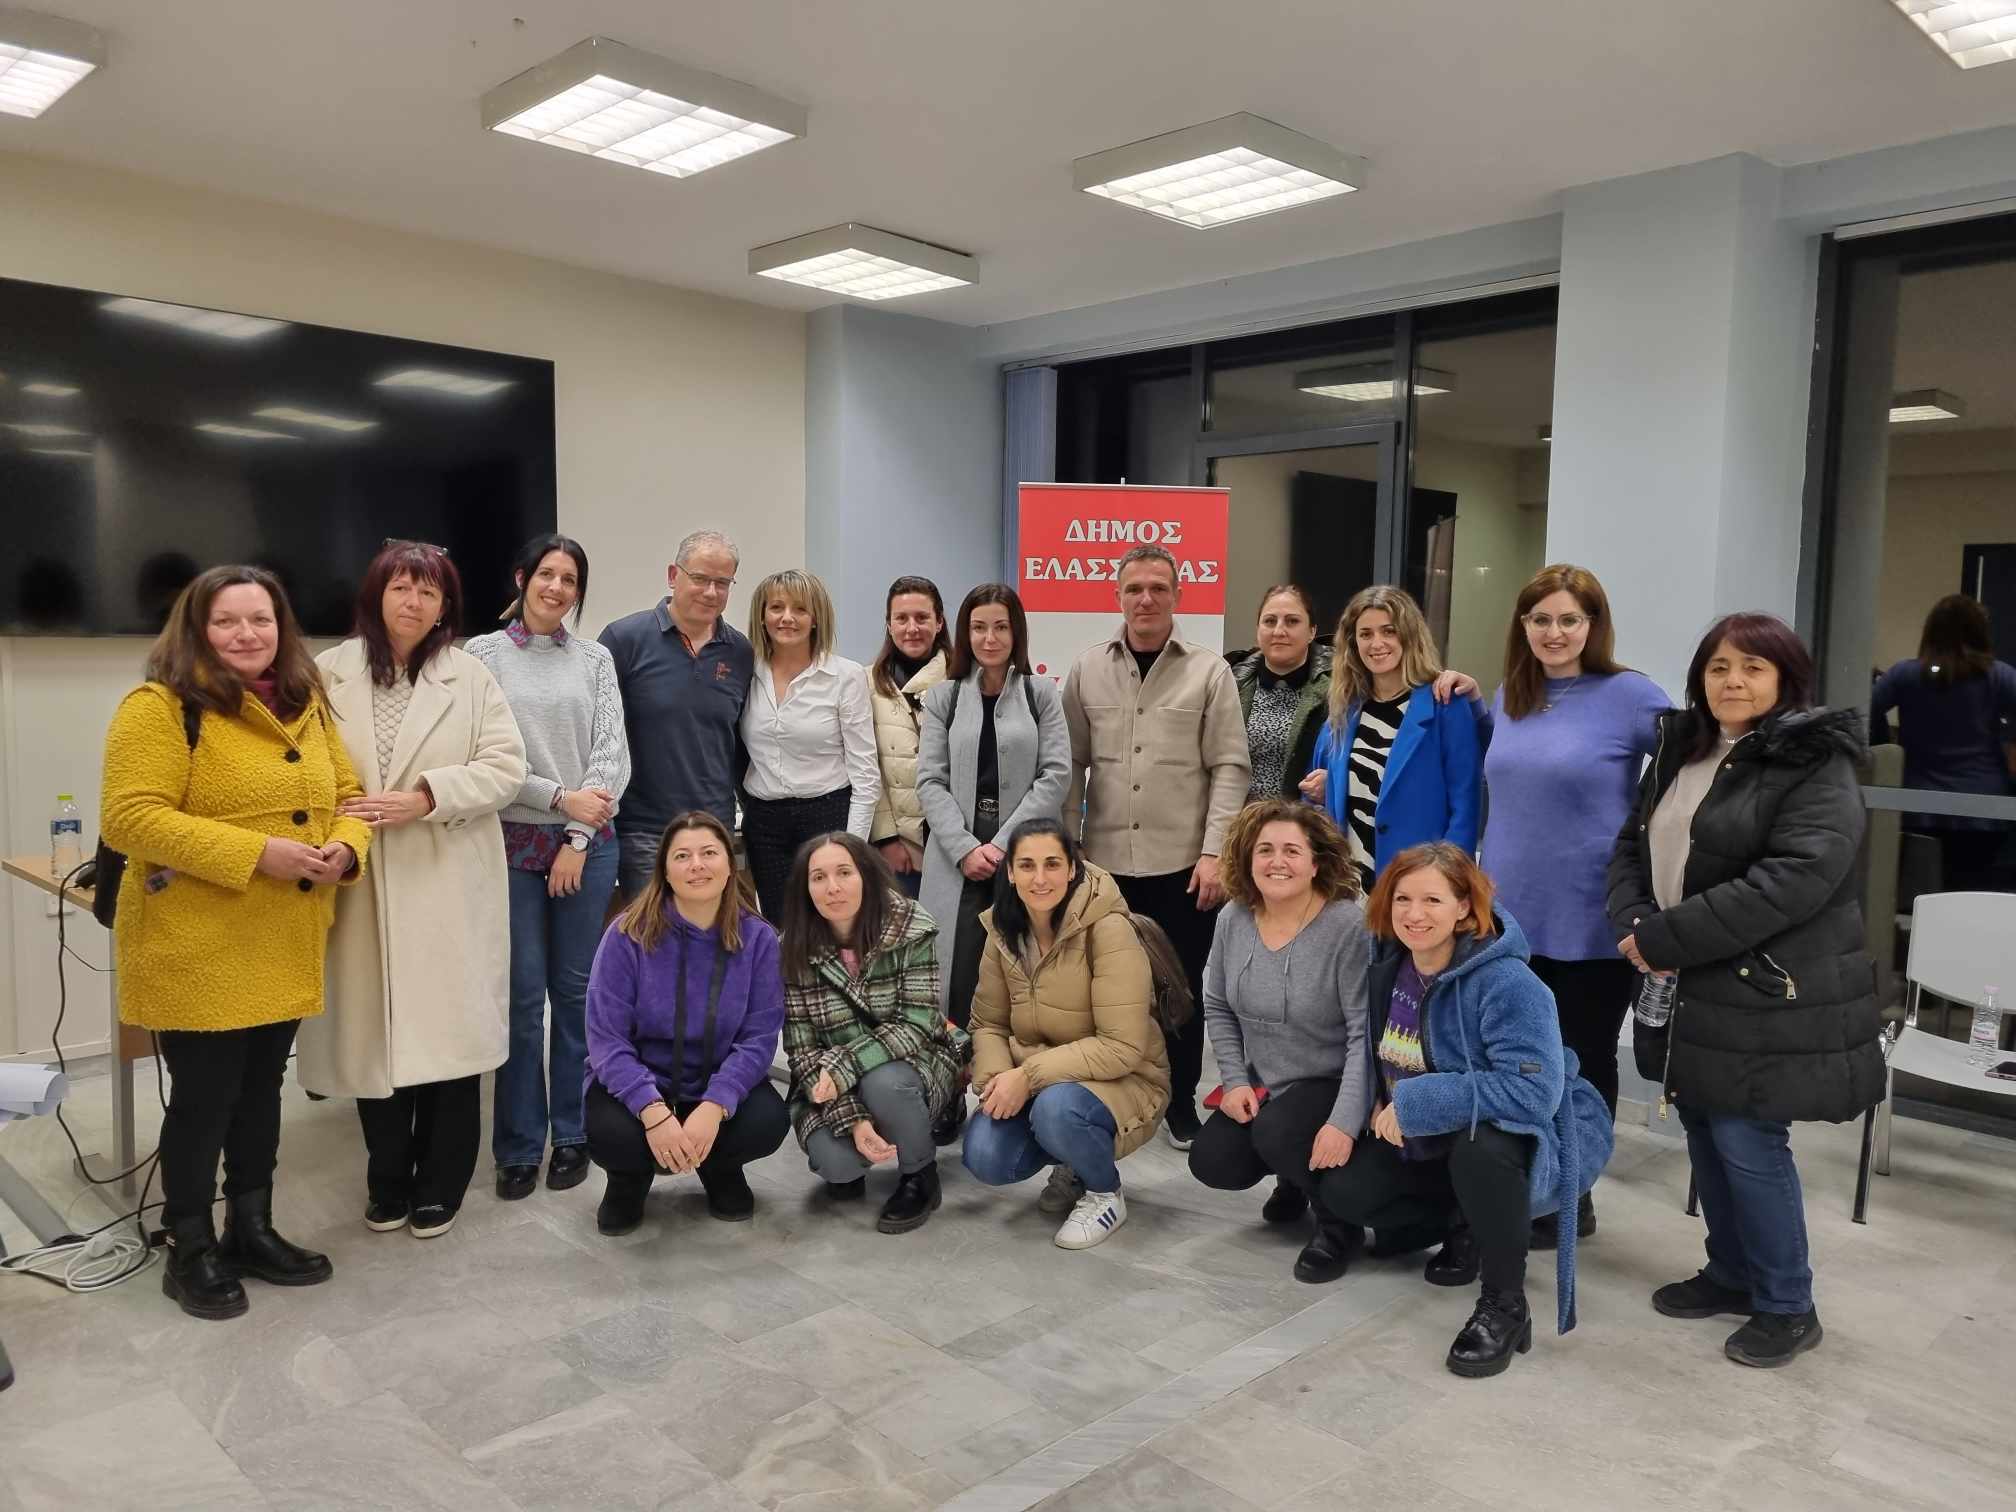 Δήμος Ελασσόνας: "Ολοκληρώθηκαν οι εκπαιδευτικές συναντήσεις γονέων"